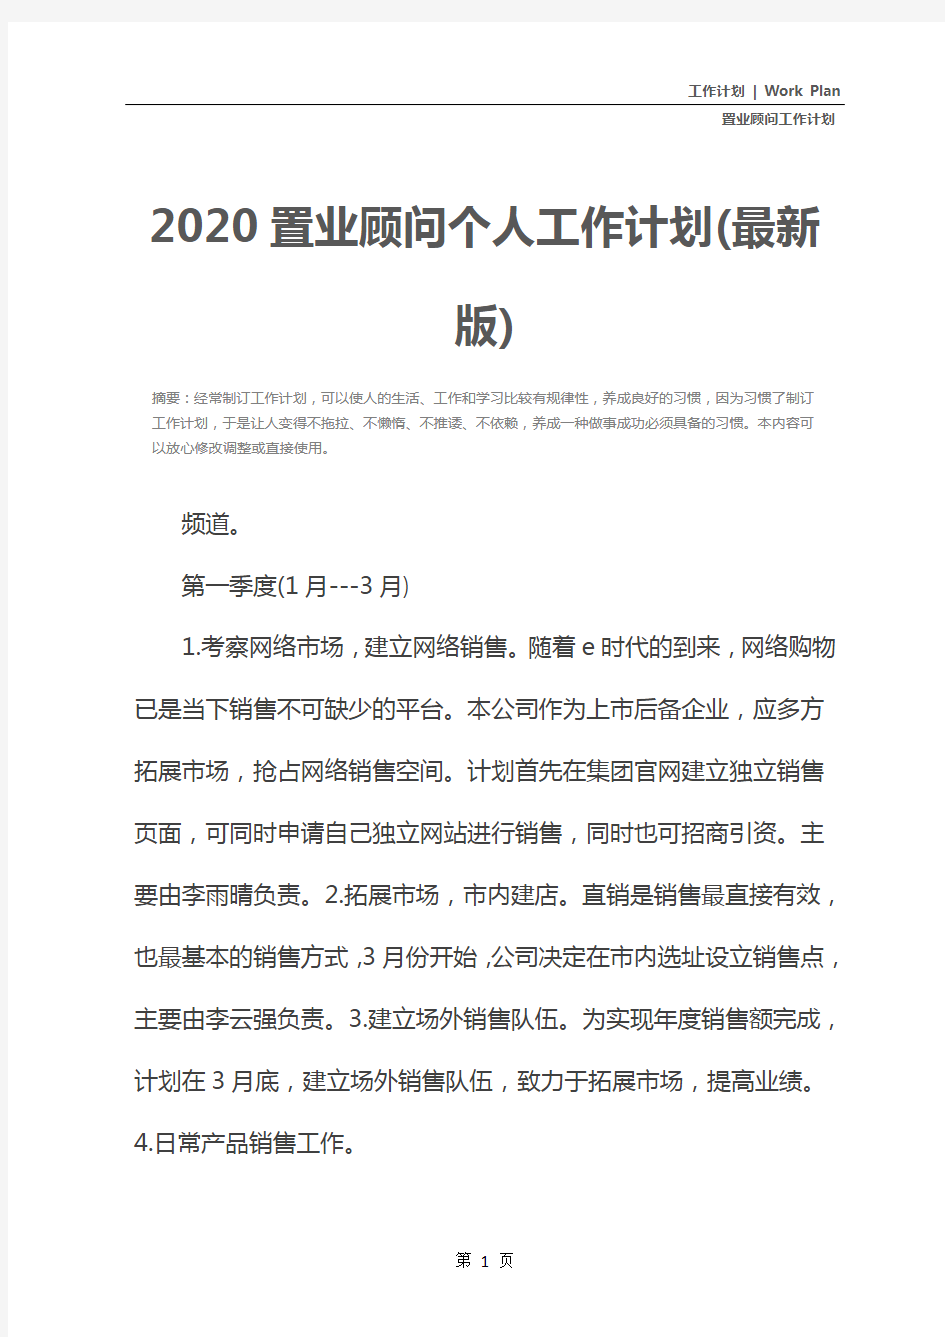 2020置业顾问个人工作计划(最新版)